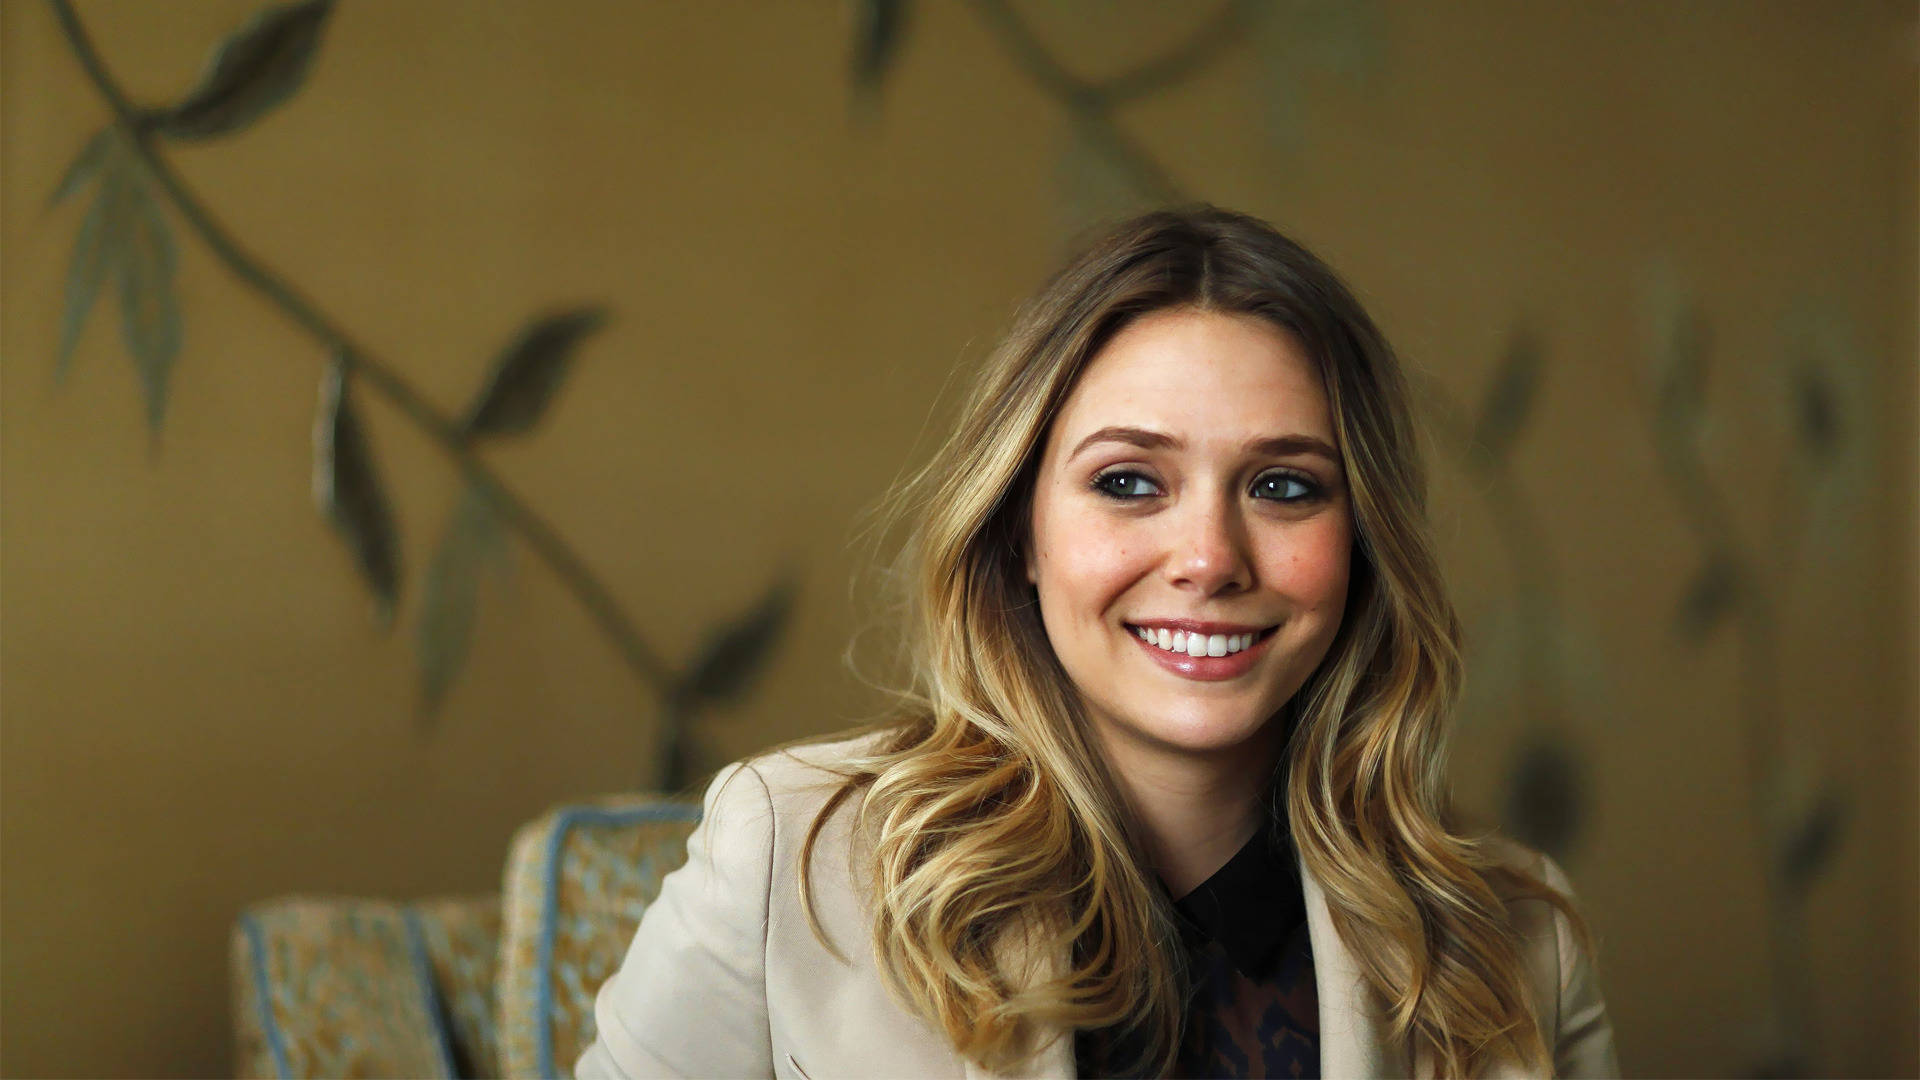 Elizabeth Olsen Stunning Smile Wallpaper